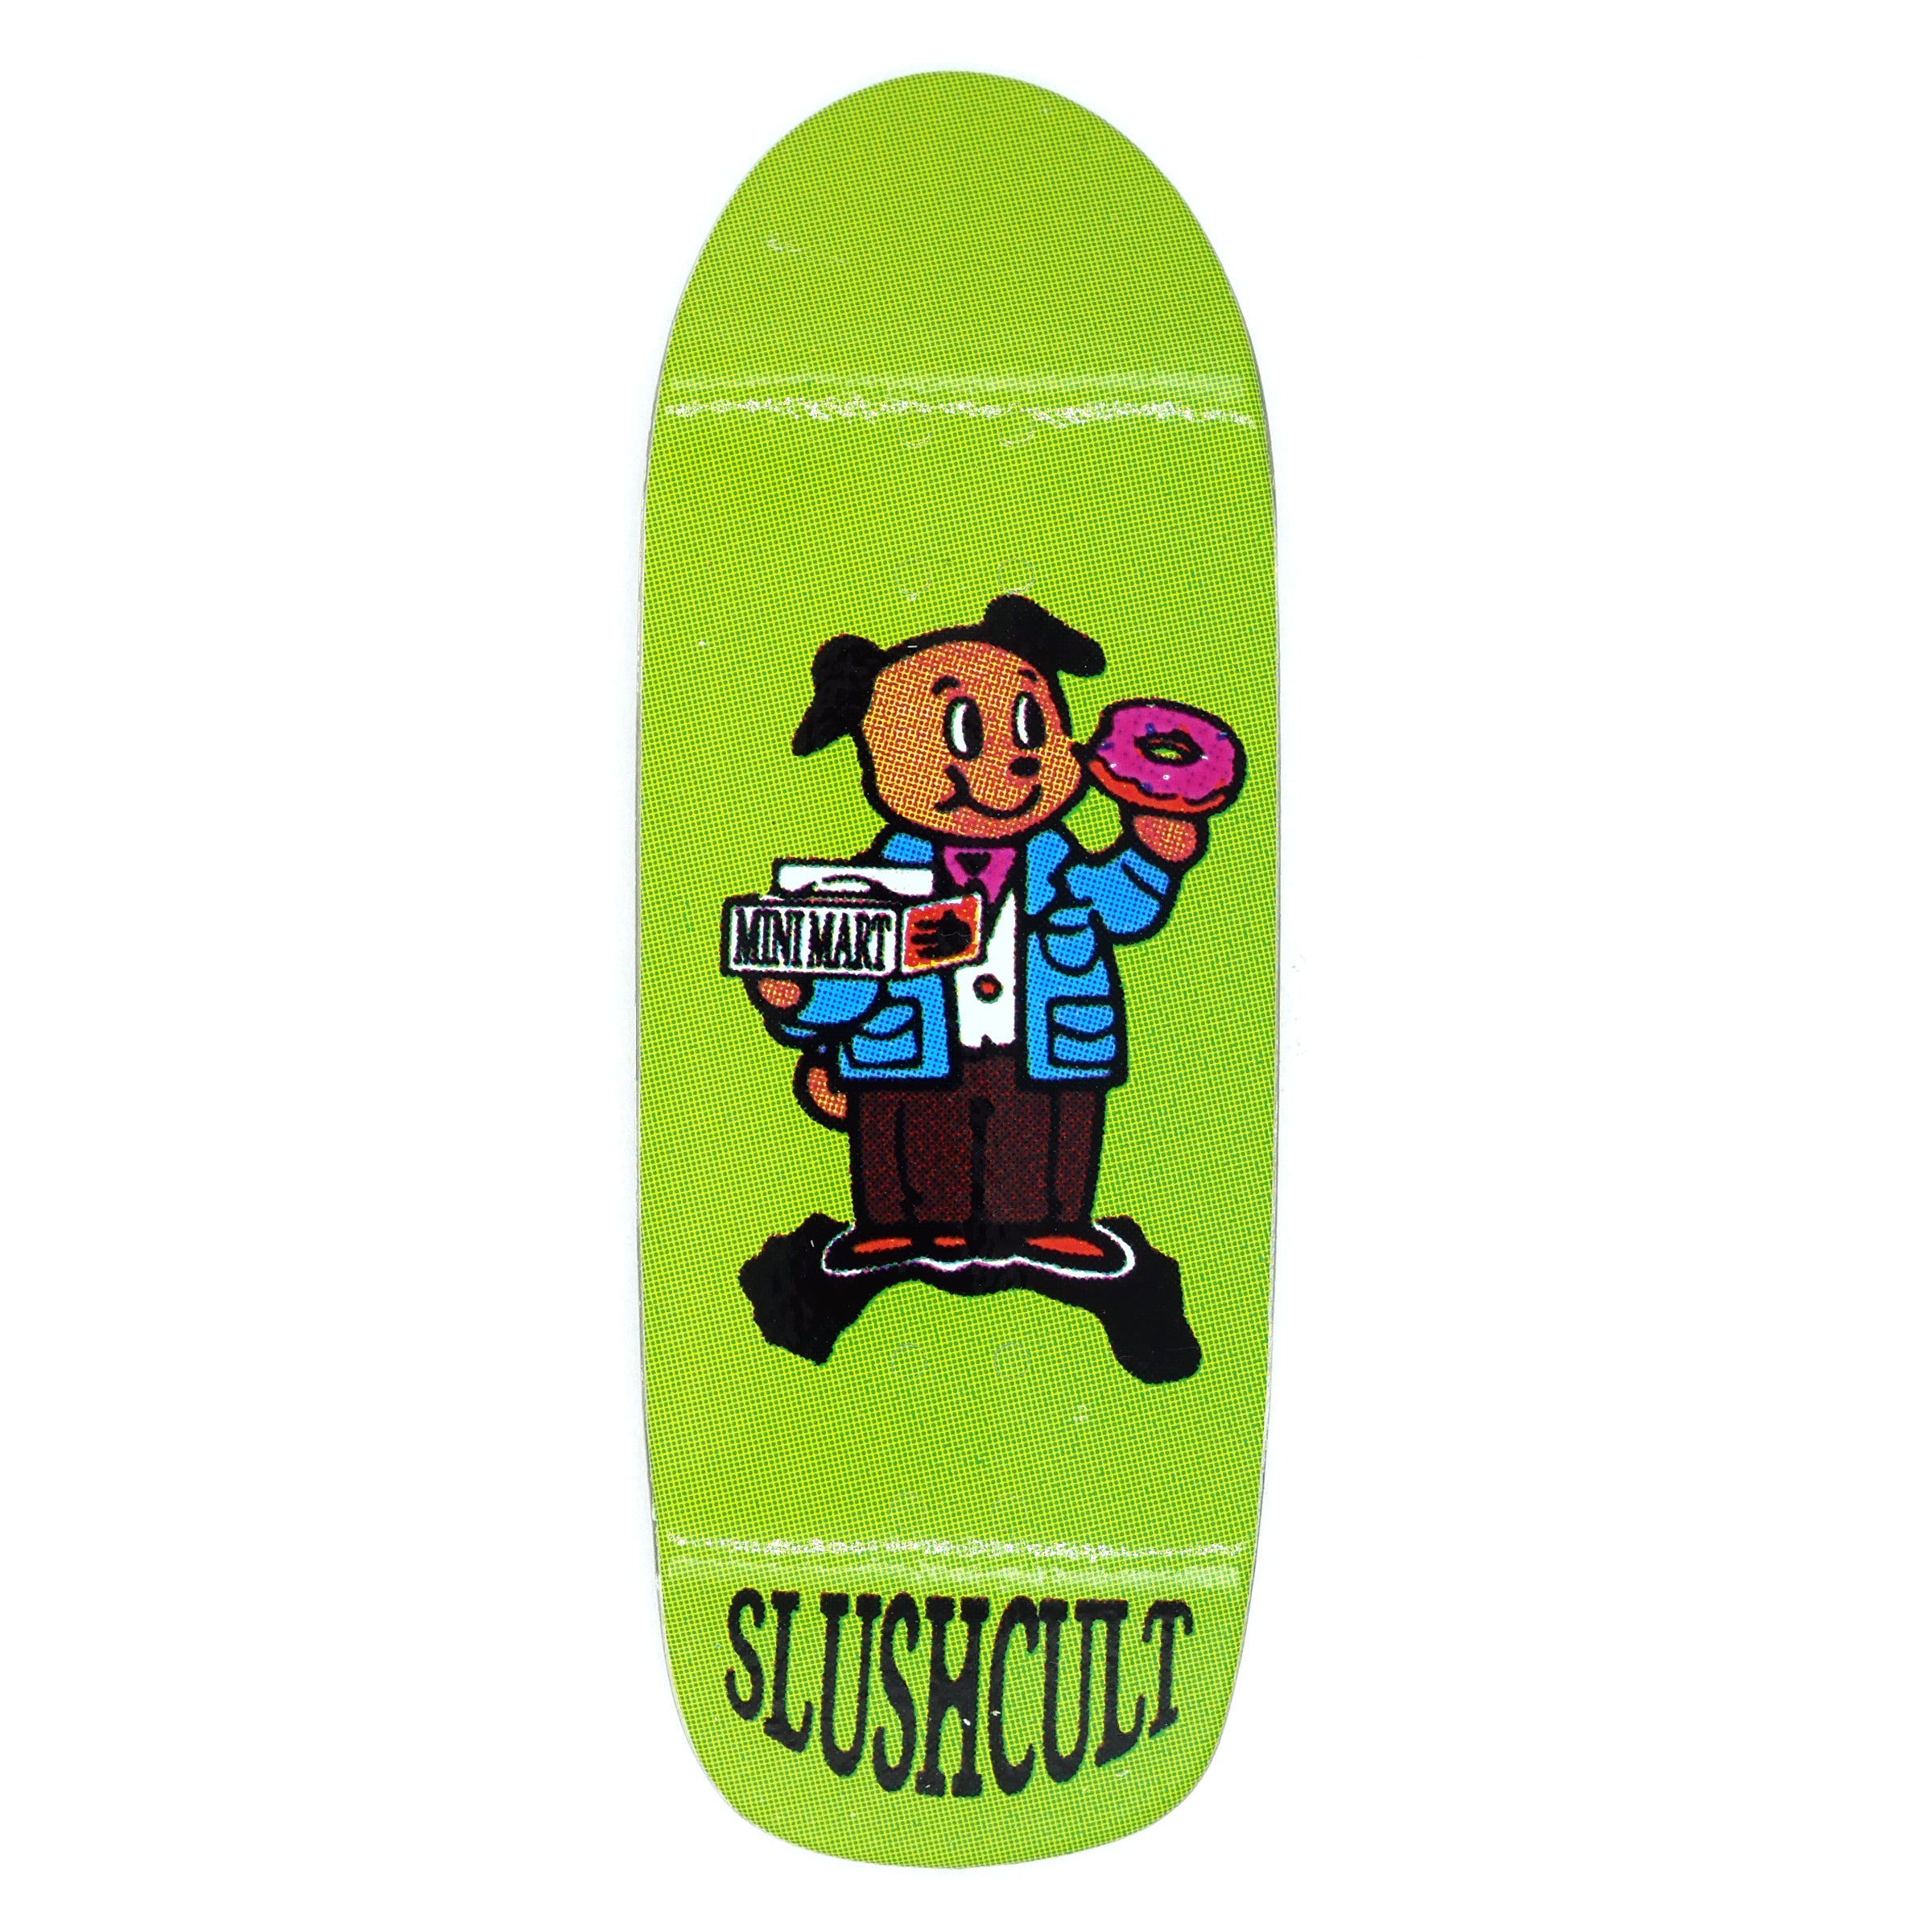 Slushcult "That Dawg Cruiser" Shop Fingerboard Deck MINI Skate Shop Slushcult    Slushcult